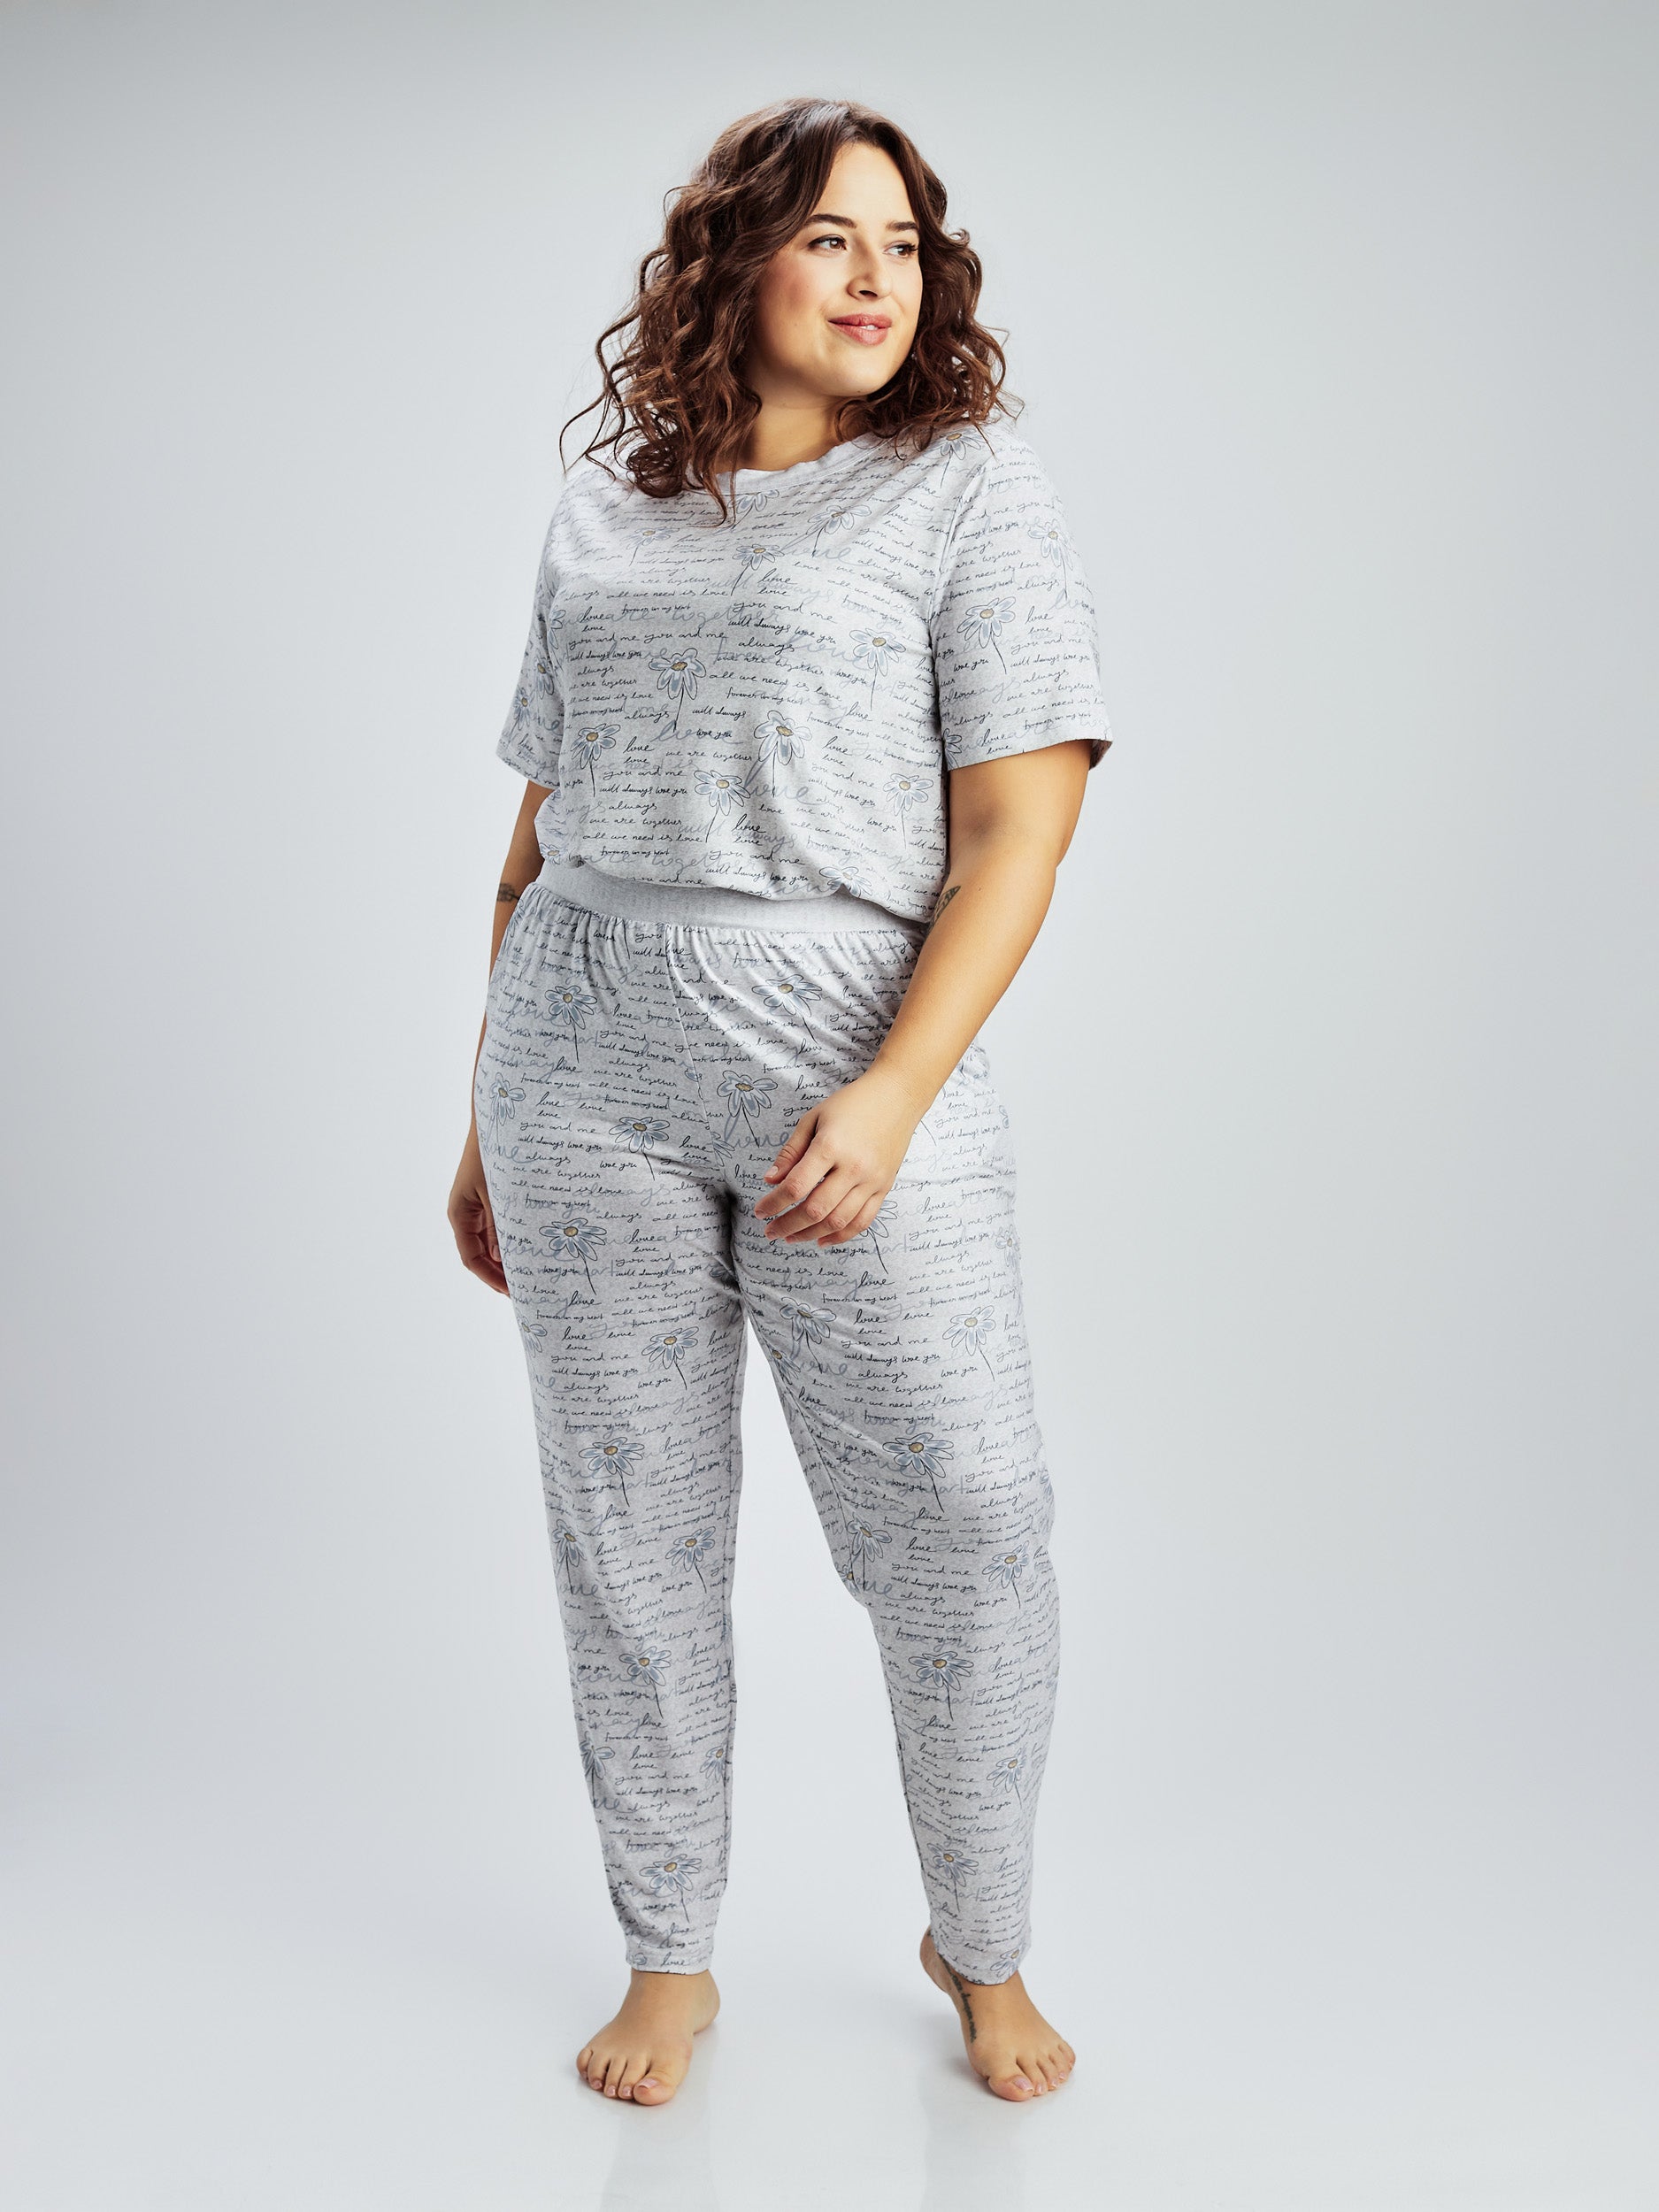 Capri Pajamas for Women - Up to 73% off